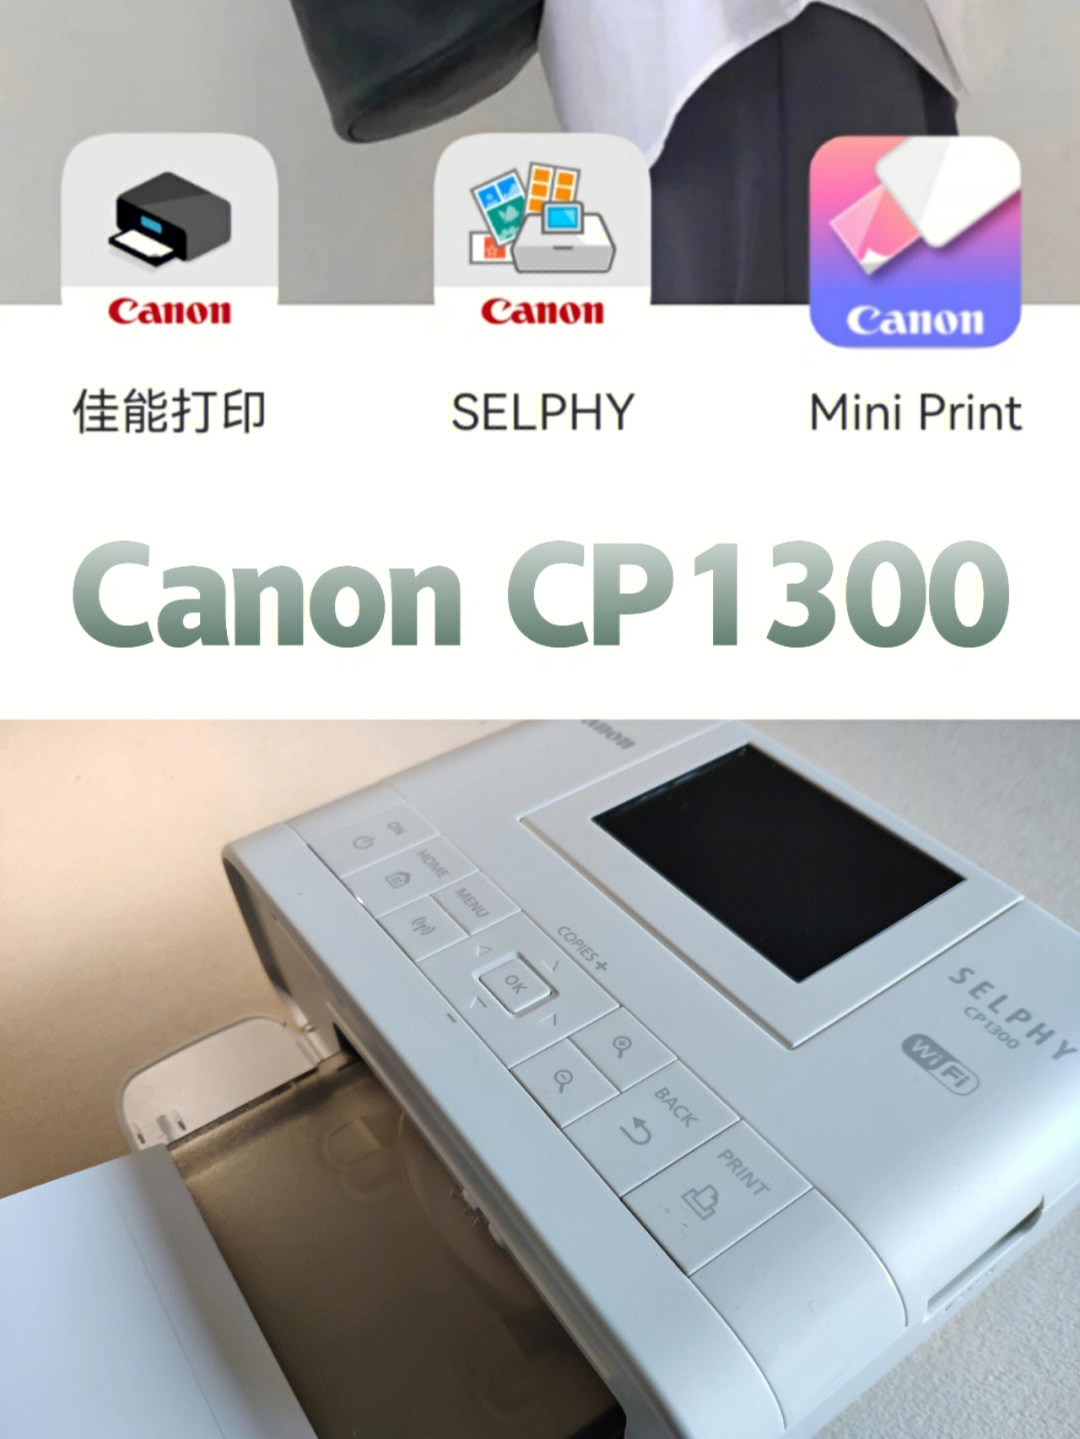 cp1300照片打印6寸设置图片